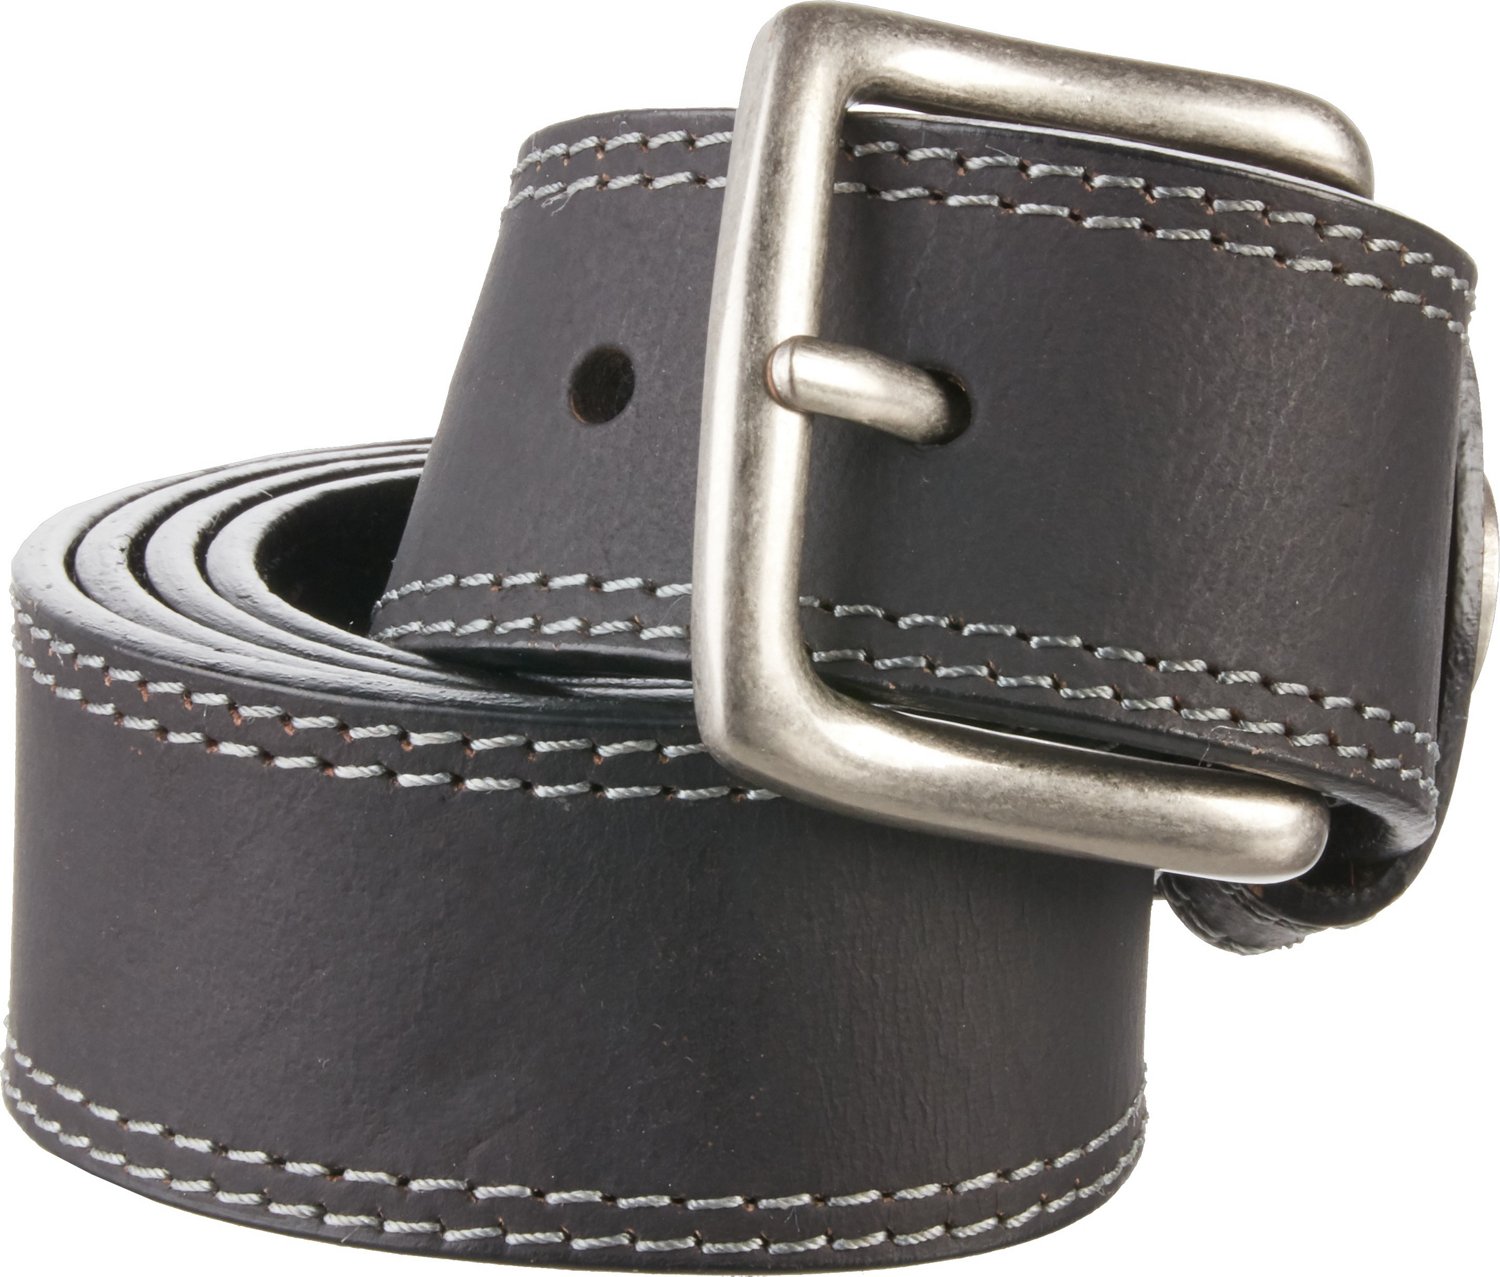 Browning Men&#39;s Leather Slug Belt | Academy